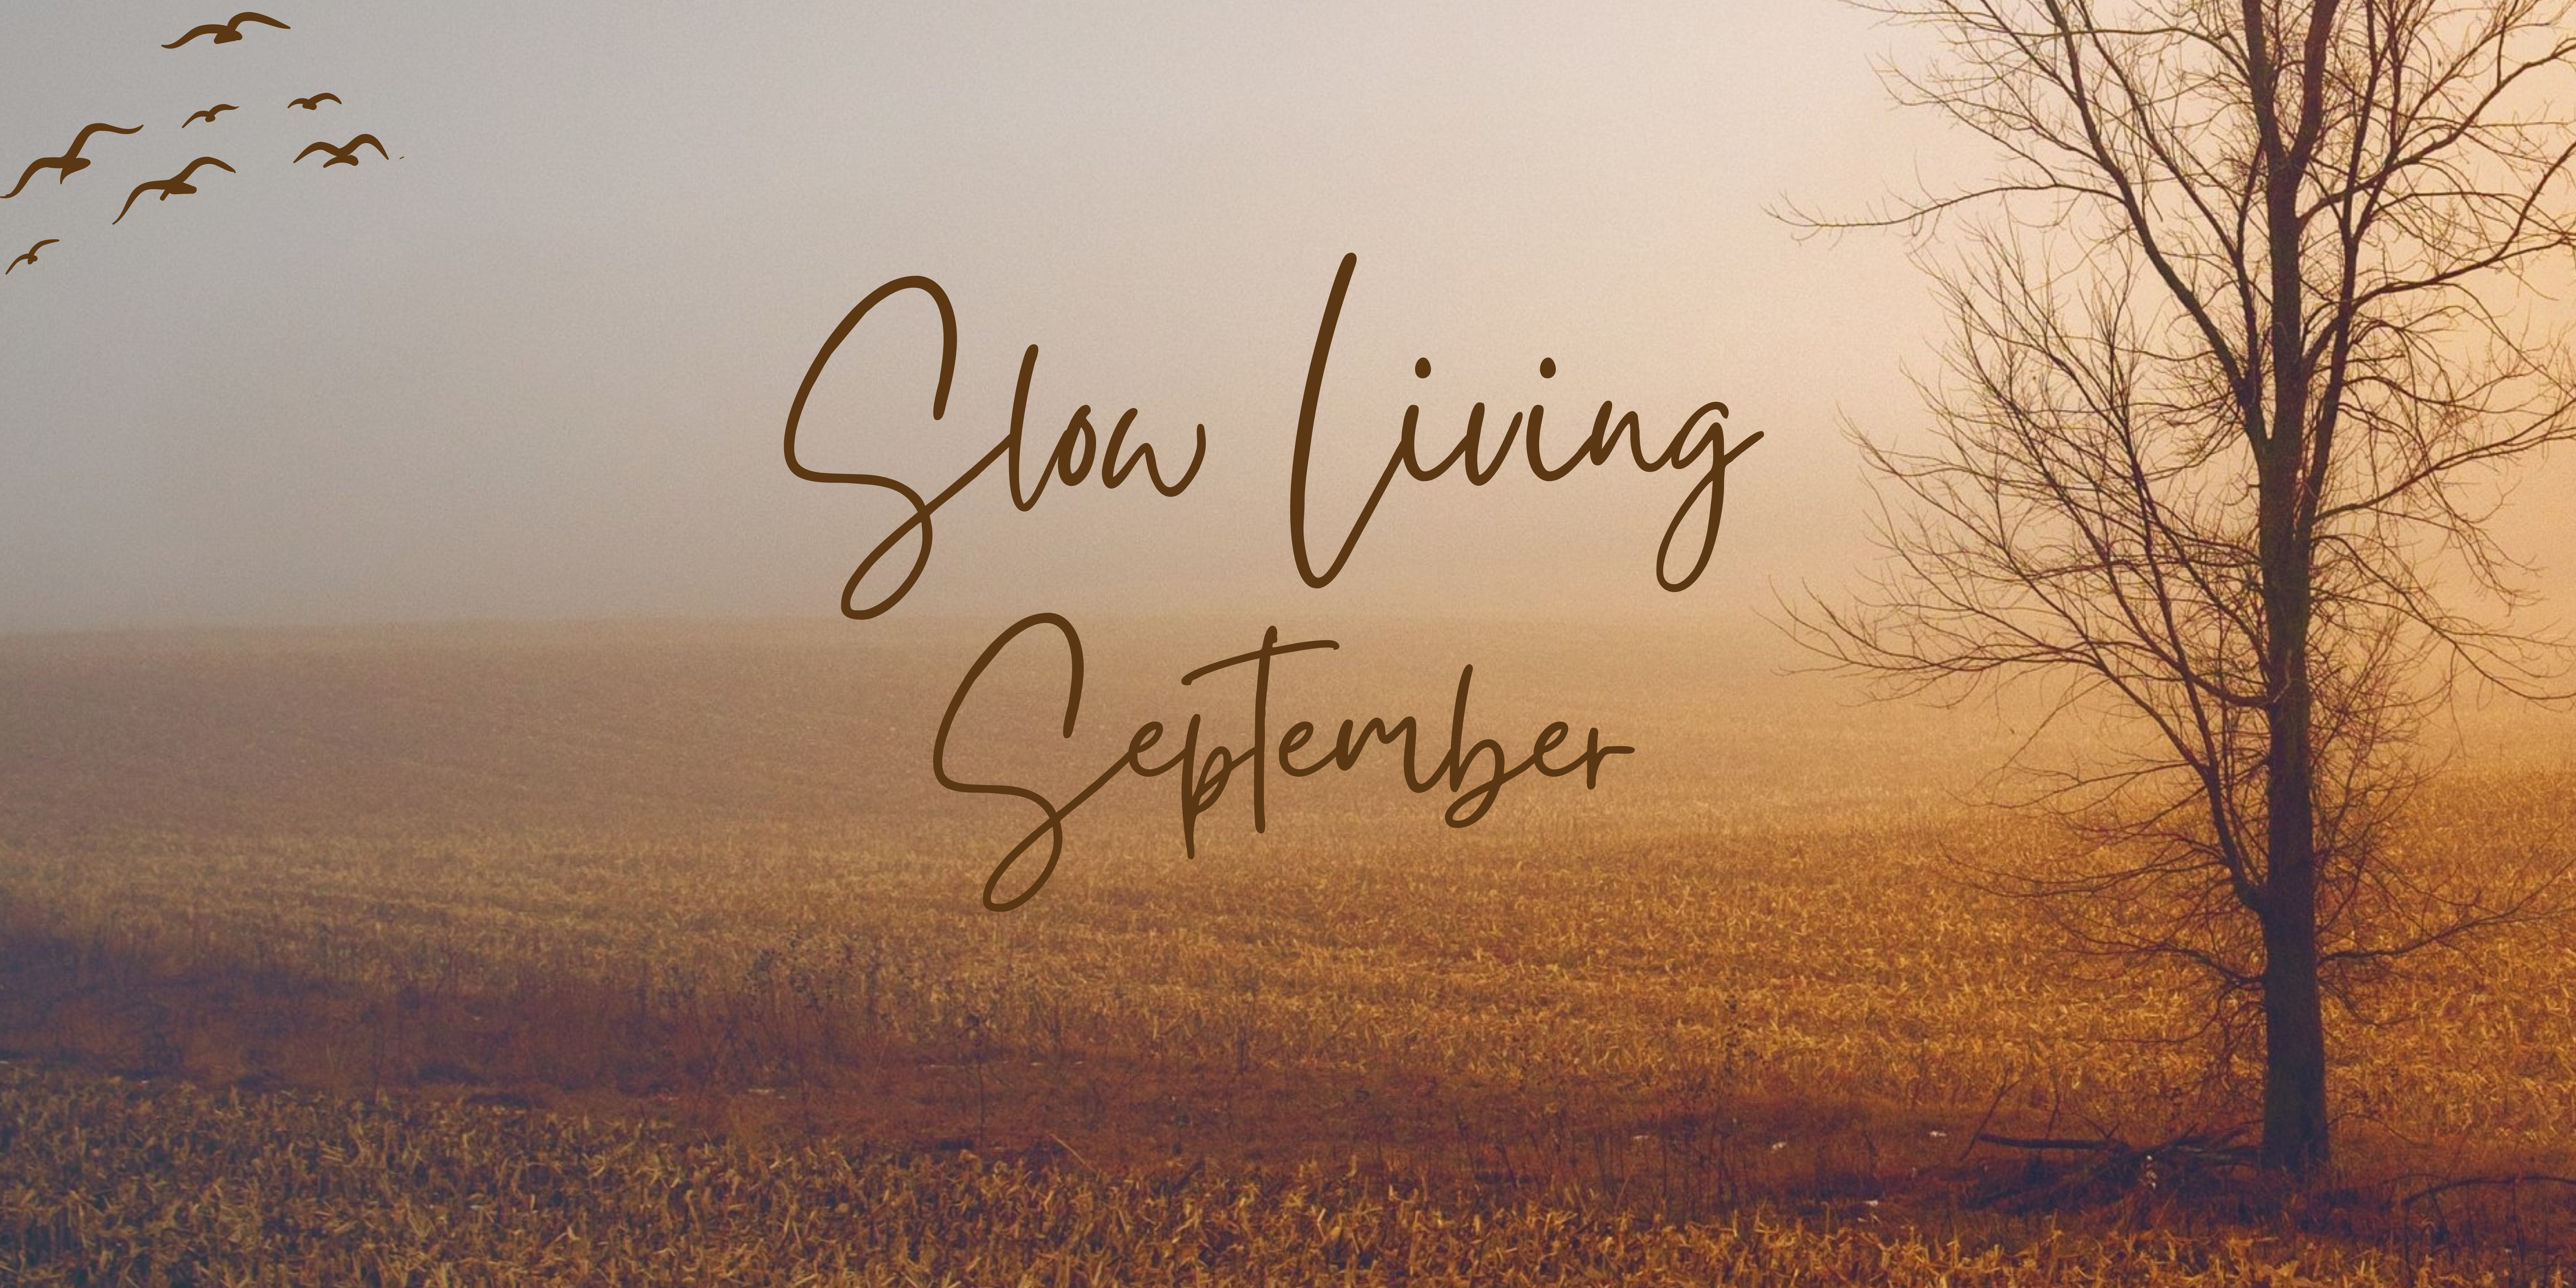 Slow Living in September